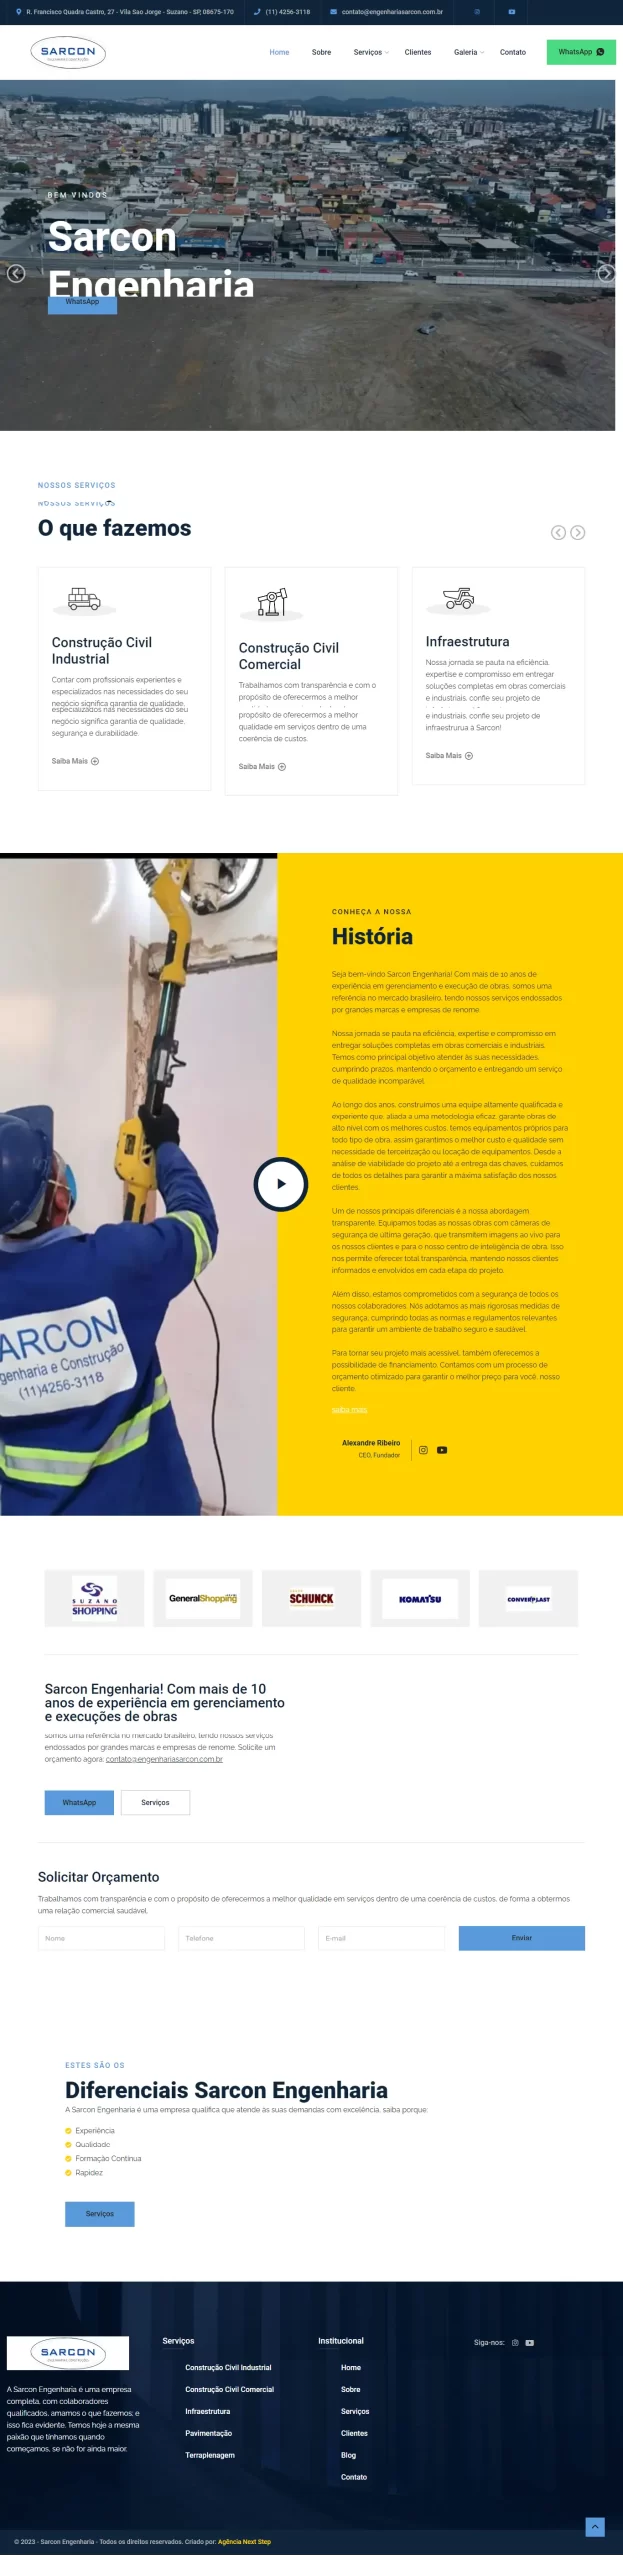 Criamos o site da SARCON Engenharia - Agência Next Step: é com prazer que anunciamos que criamos o site novo da Sarcon Engenharia de Suzano!